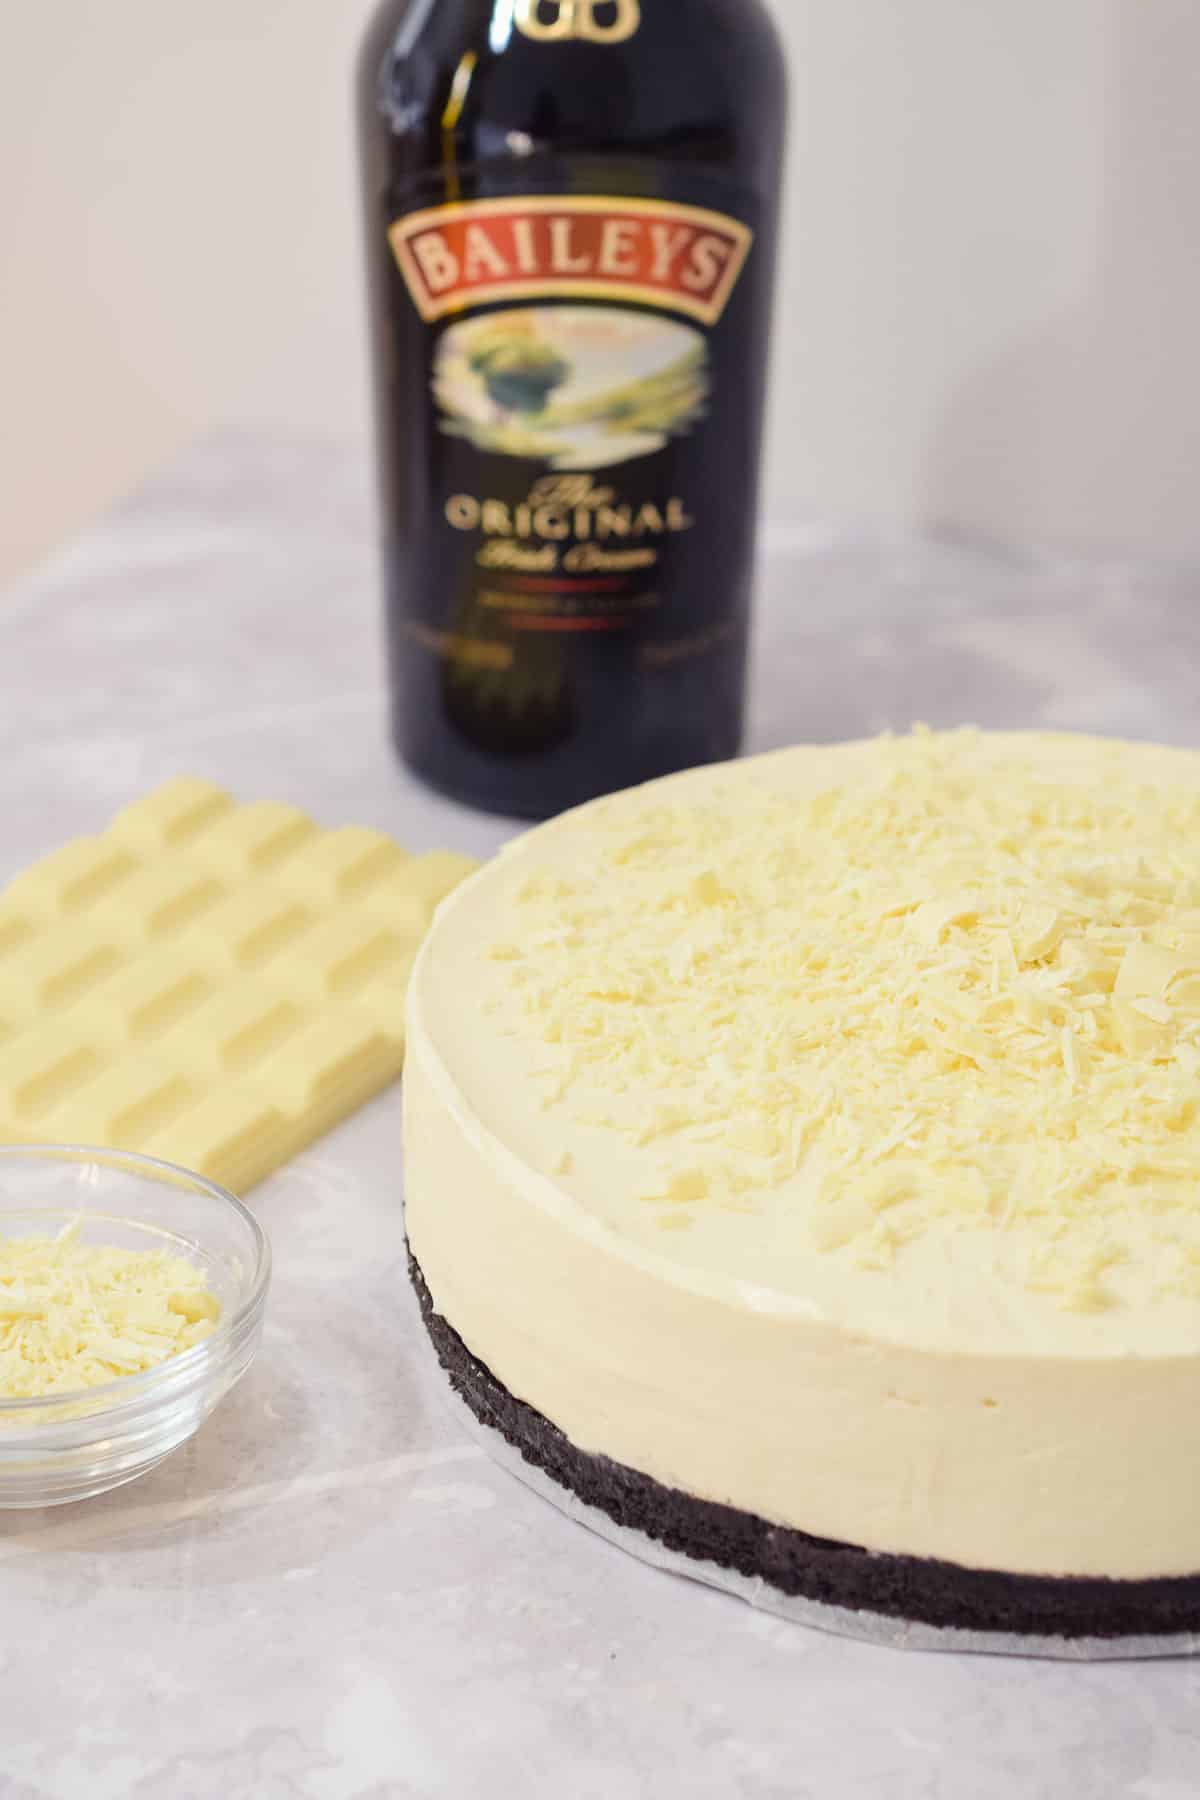 baileys irish cream white chocolate cheesecake with an oreo base.